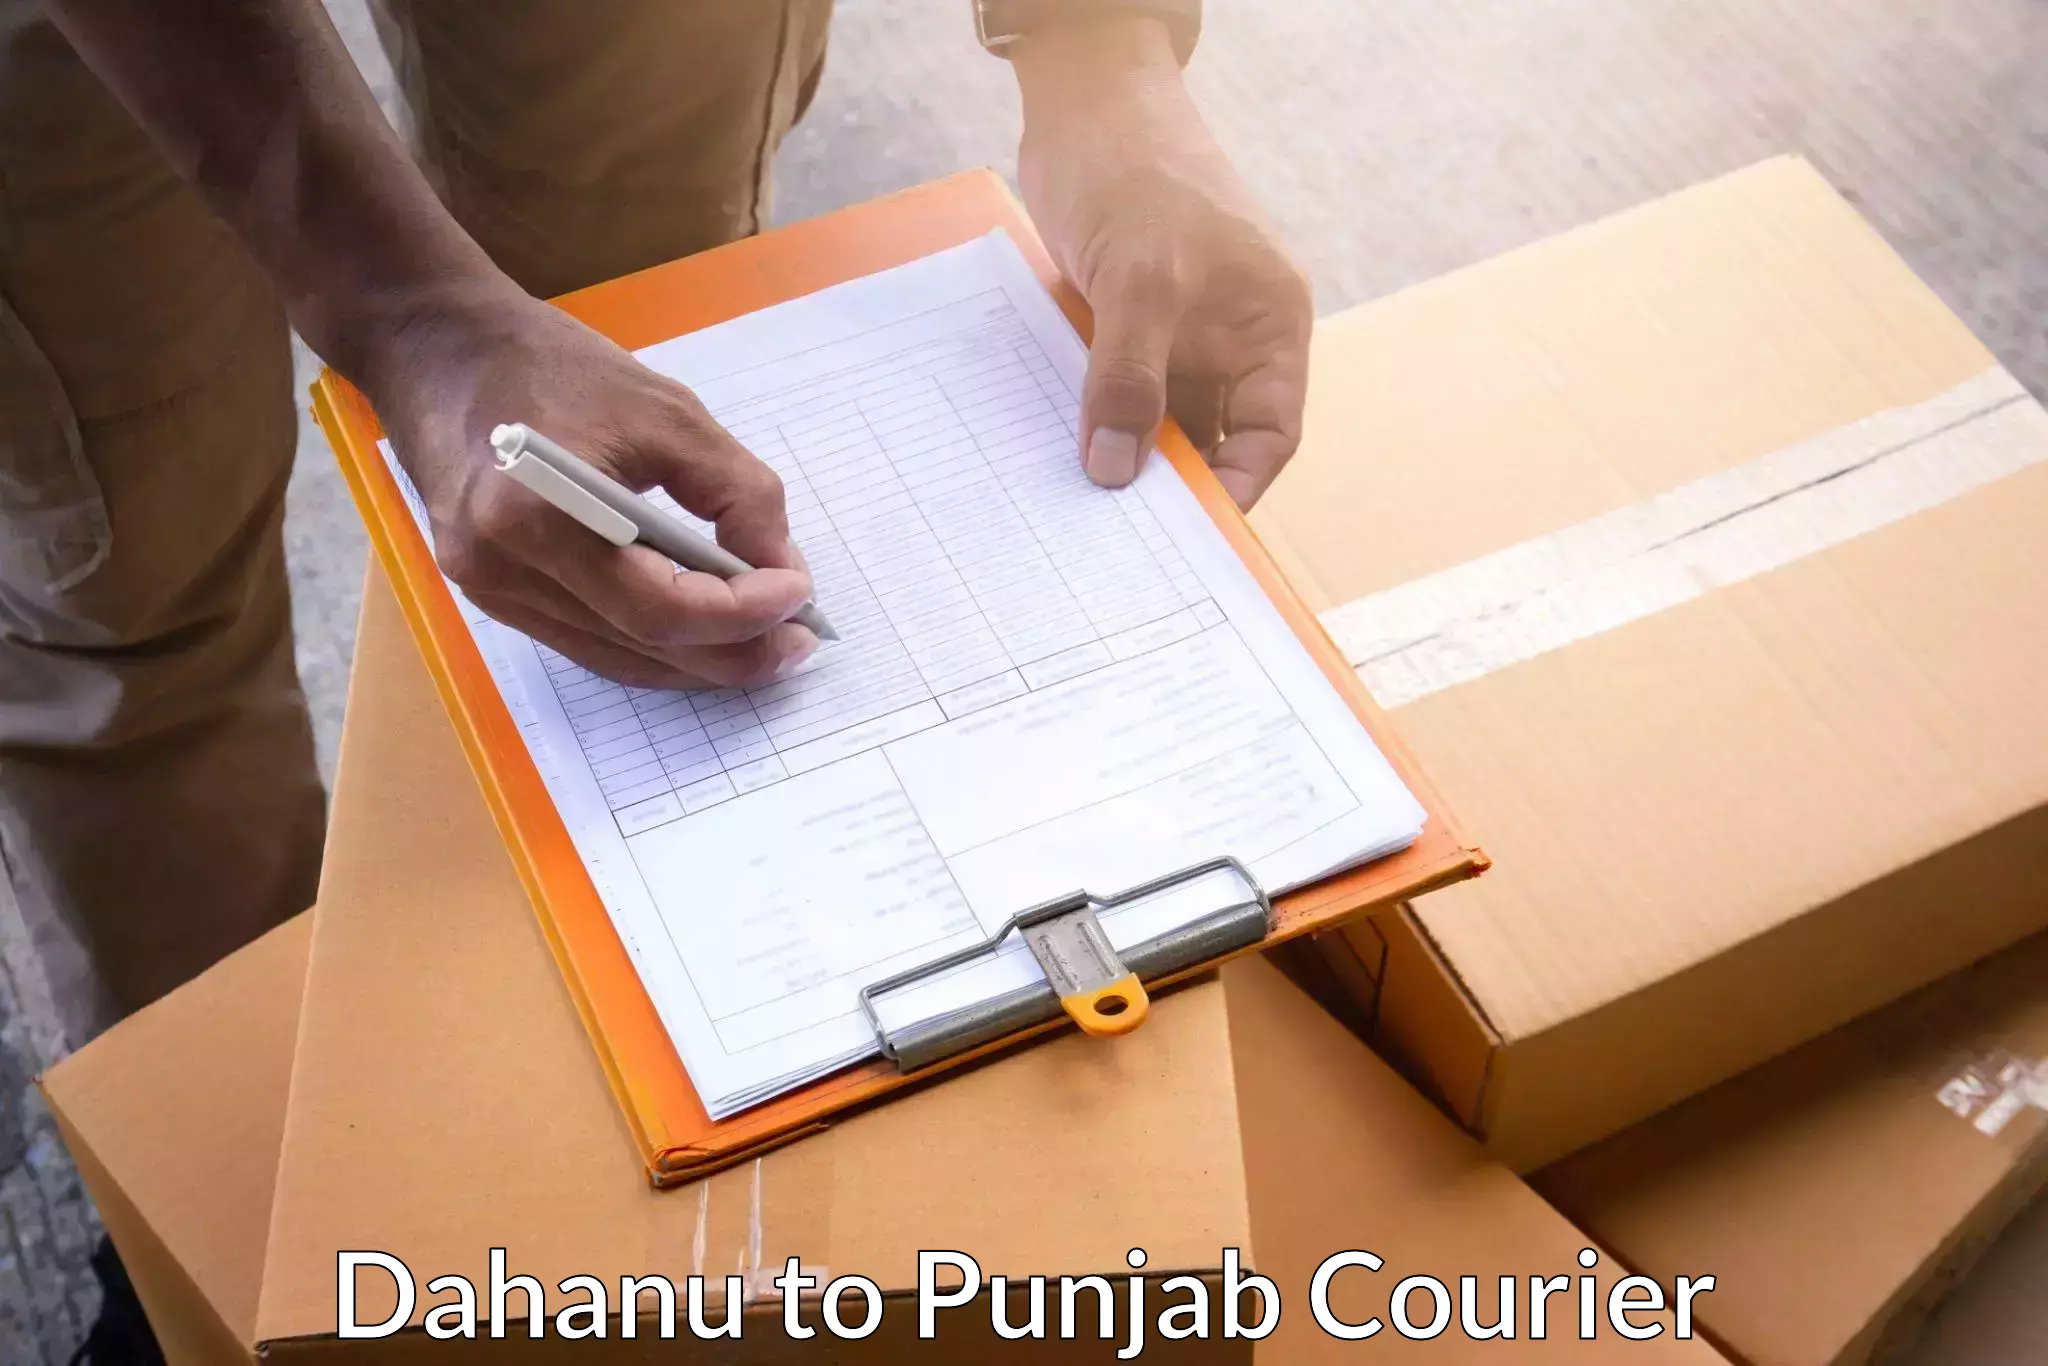 Quality courier services Dahanu to Bhadaur